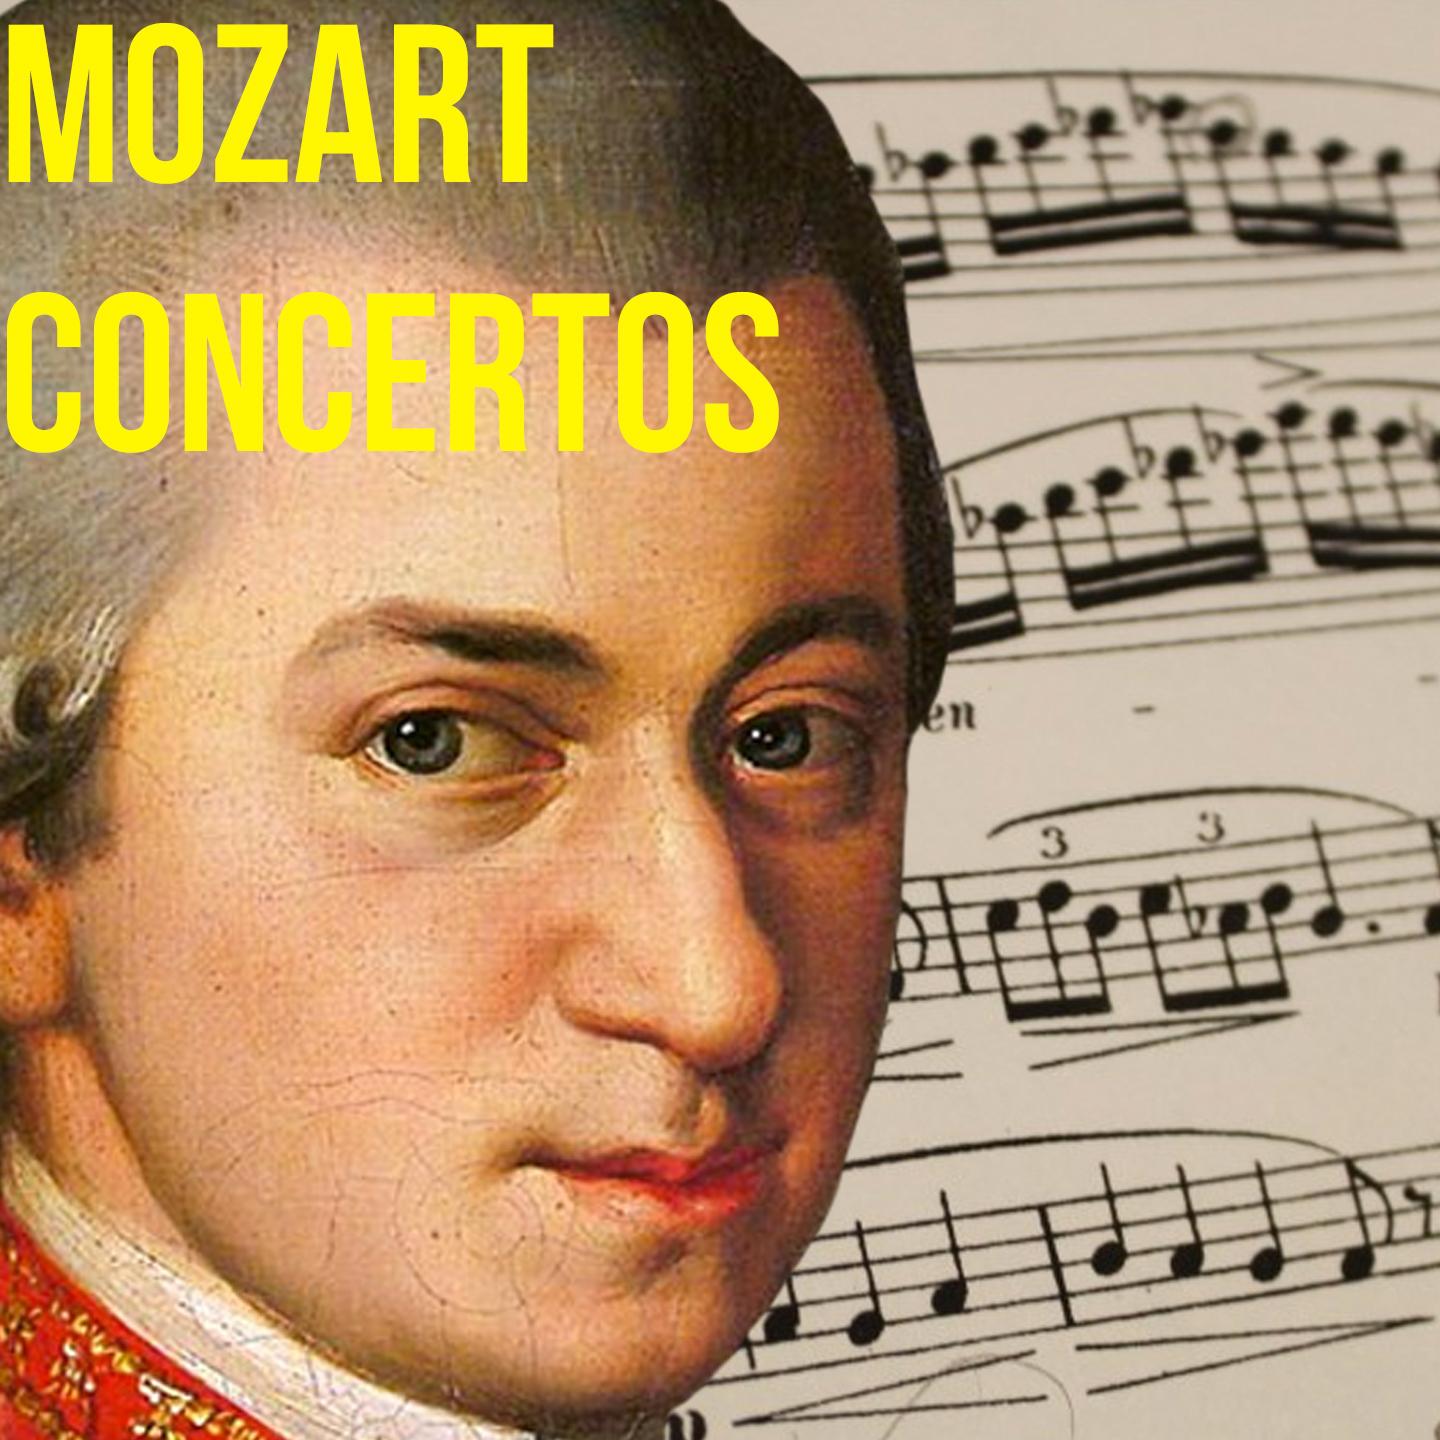 Mozart Concertos